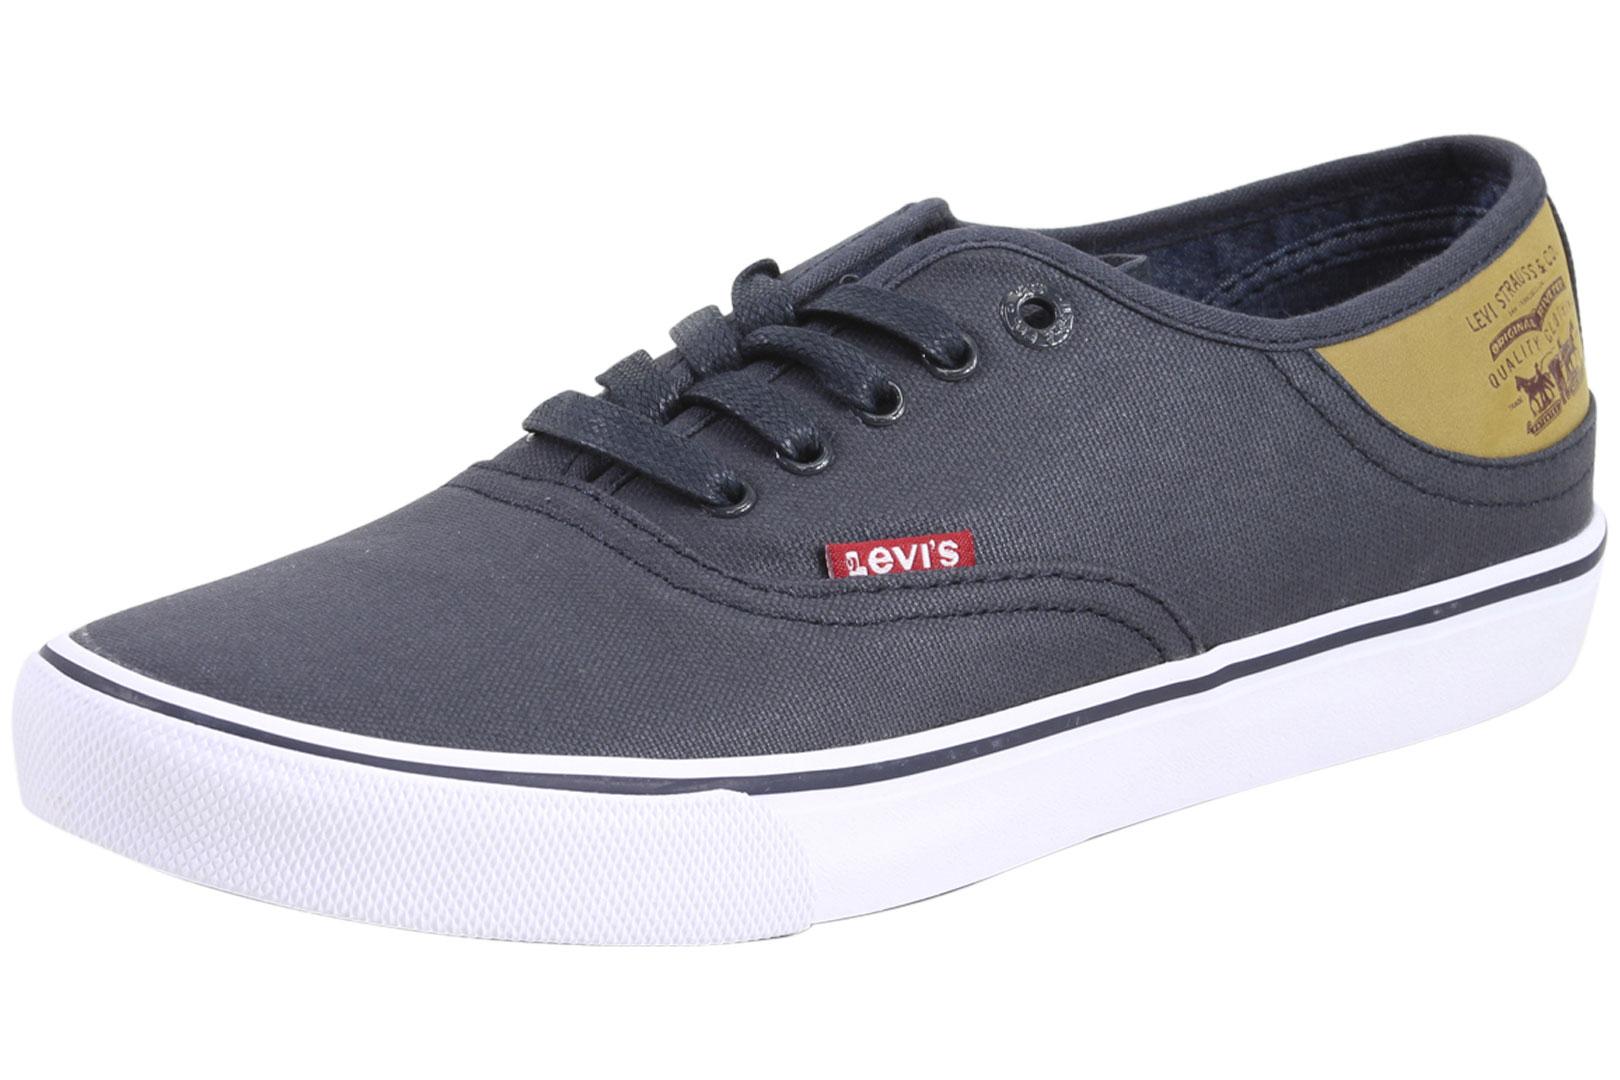 Levi's Men's Monterey Buck Sneakers Shoes - Navy/Brown - 10 D(M) US